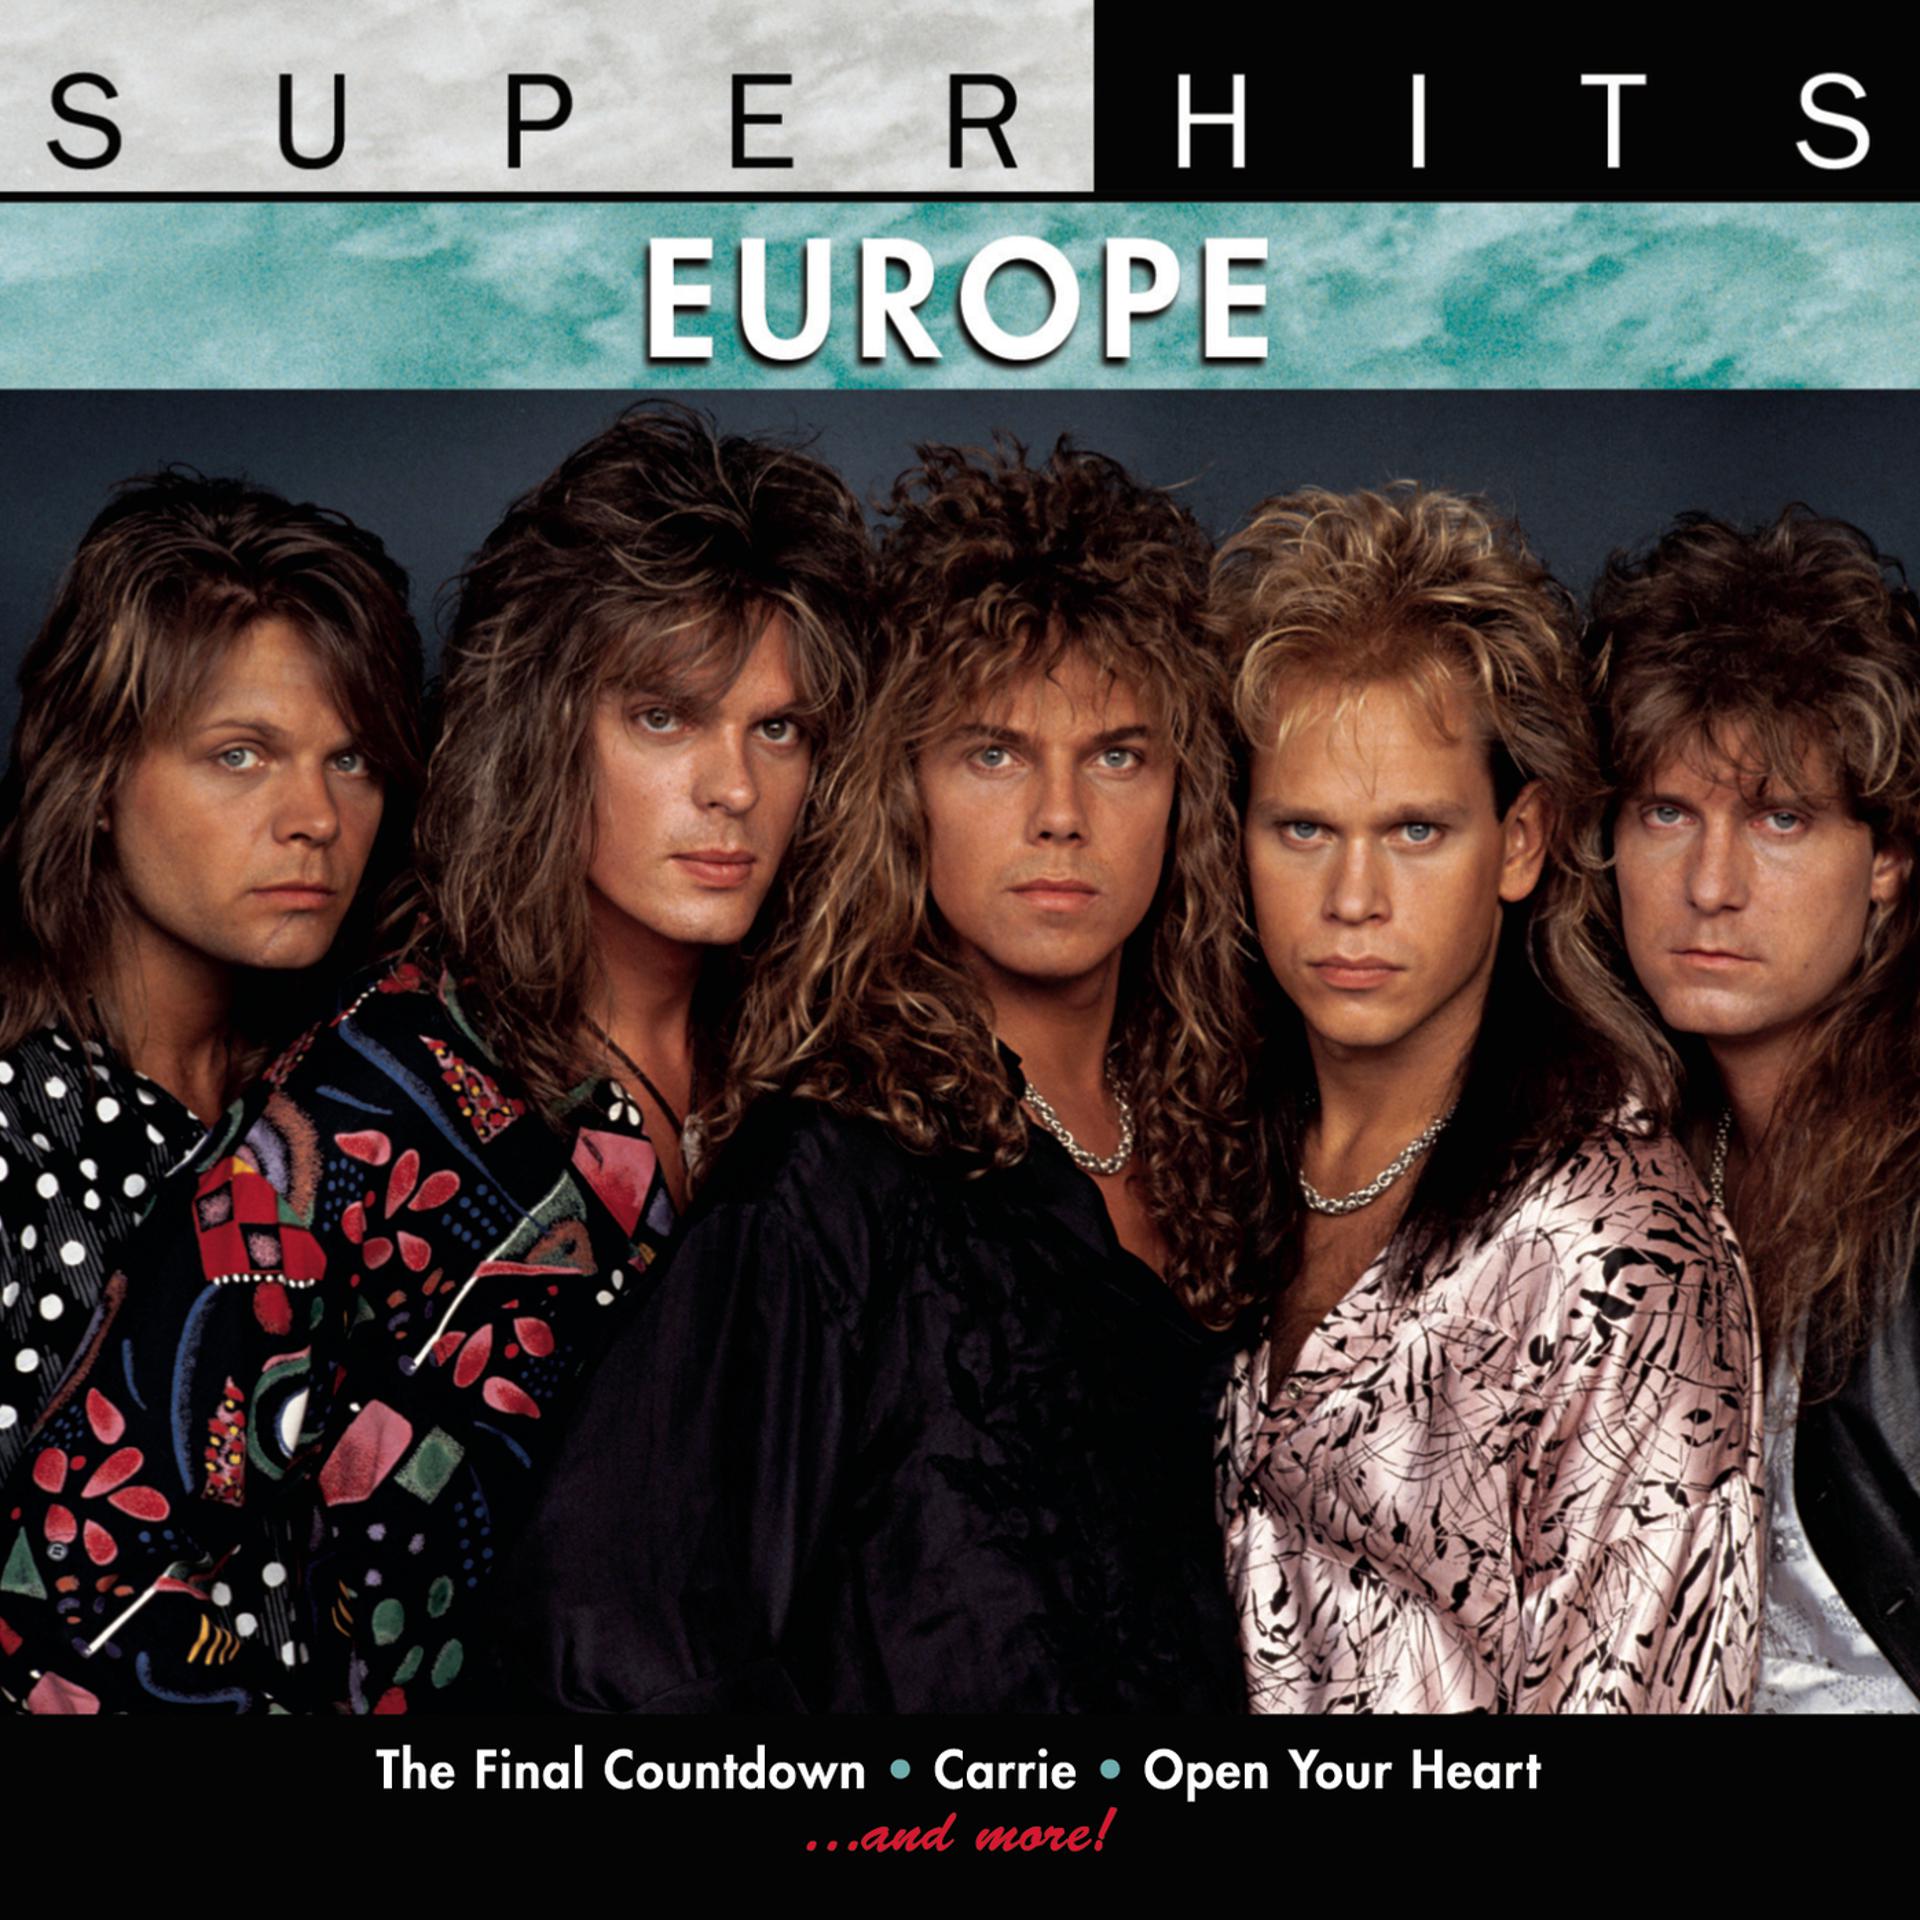 Слушать рок хиты 80 90 зарубежные. Europe группа 1986. Europa группа the Final Countdown. Europe Band обложки. Europe the Final Countdown обложка.